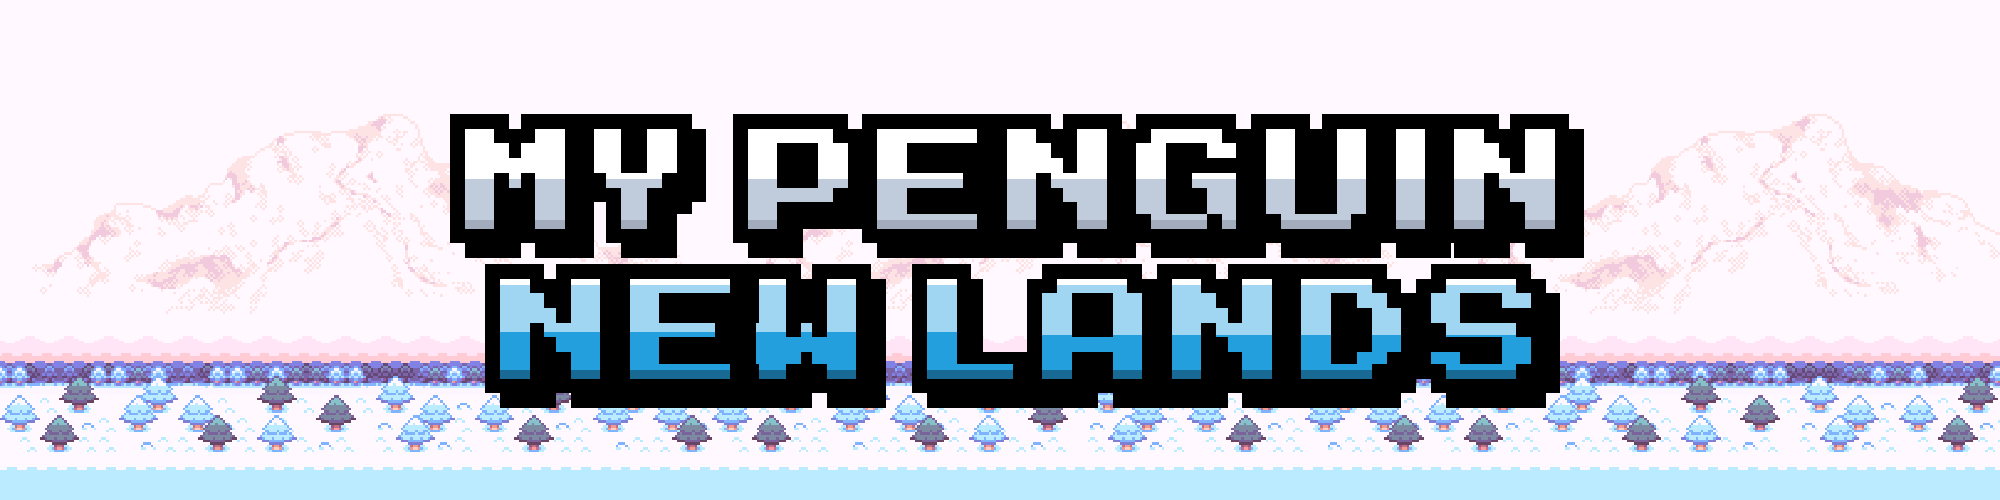 My Penguin: New Lands (In development)